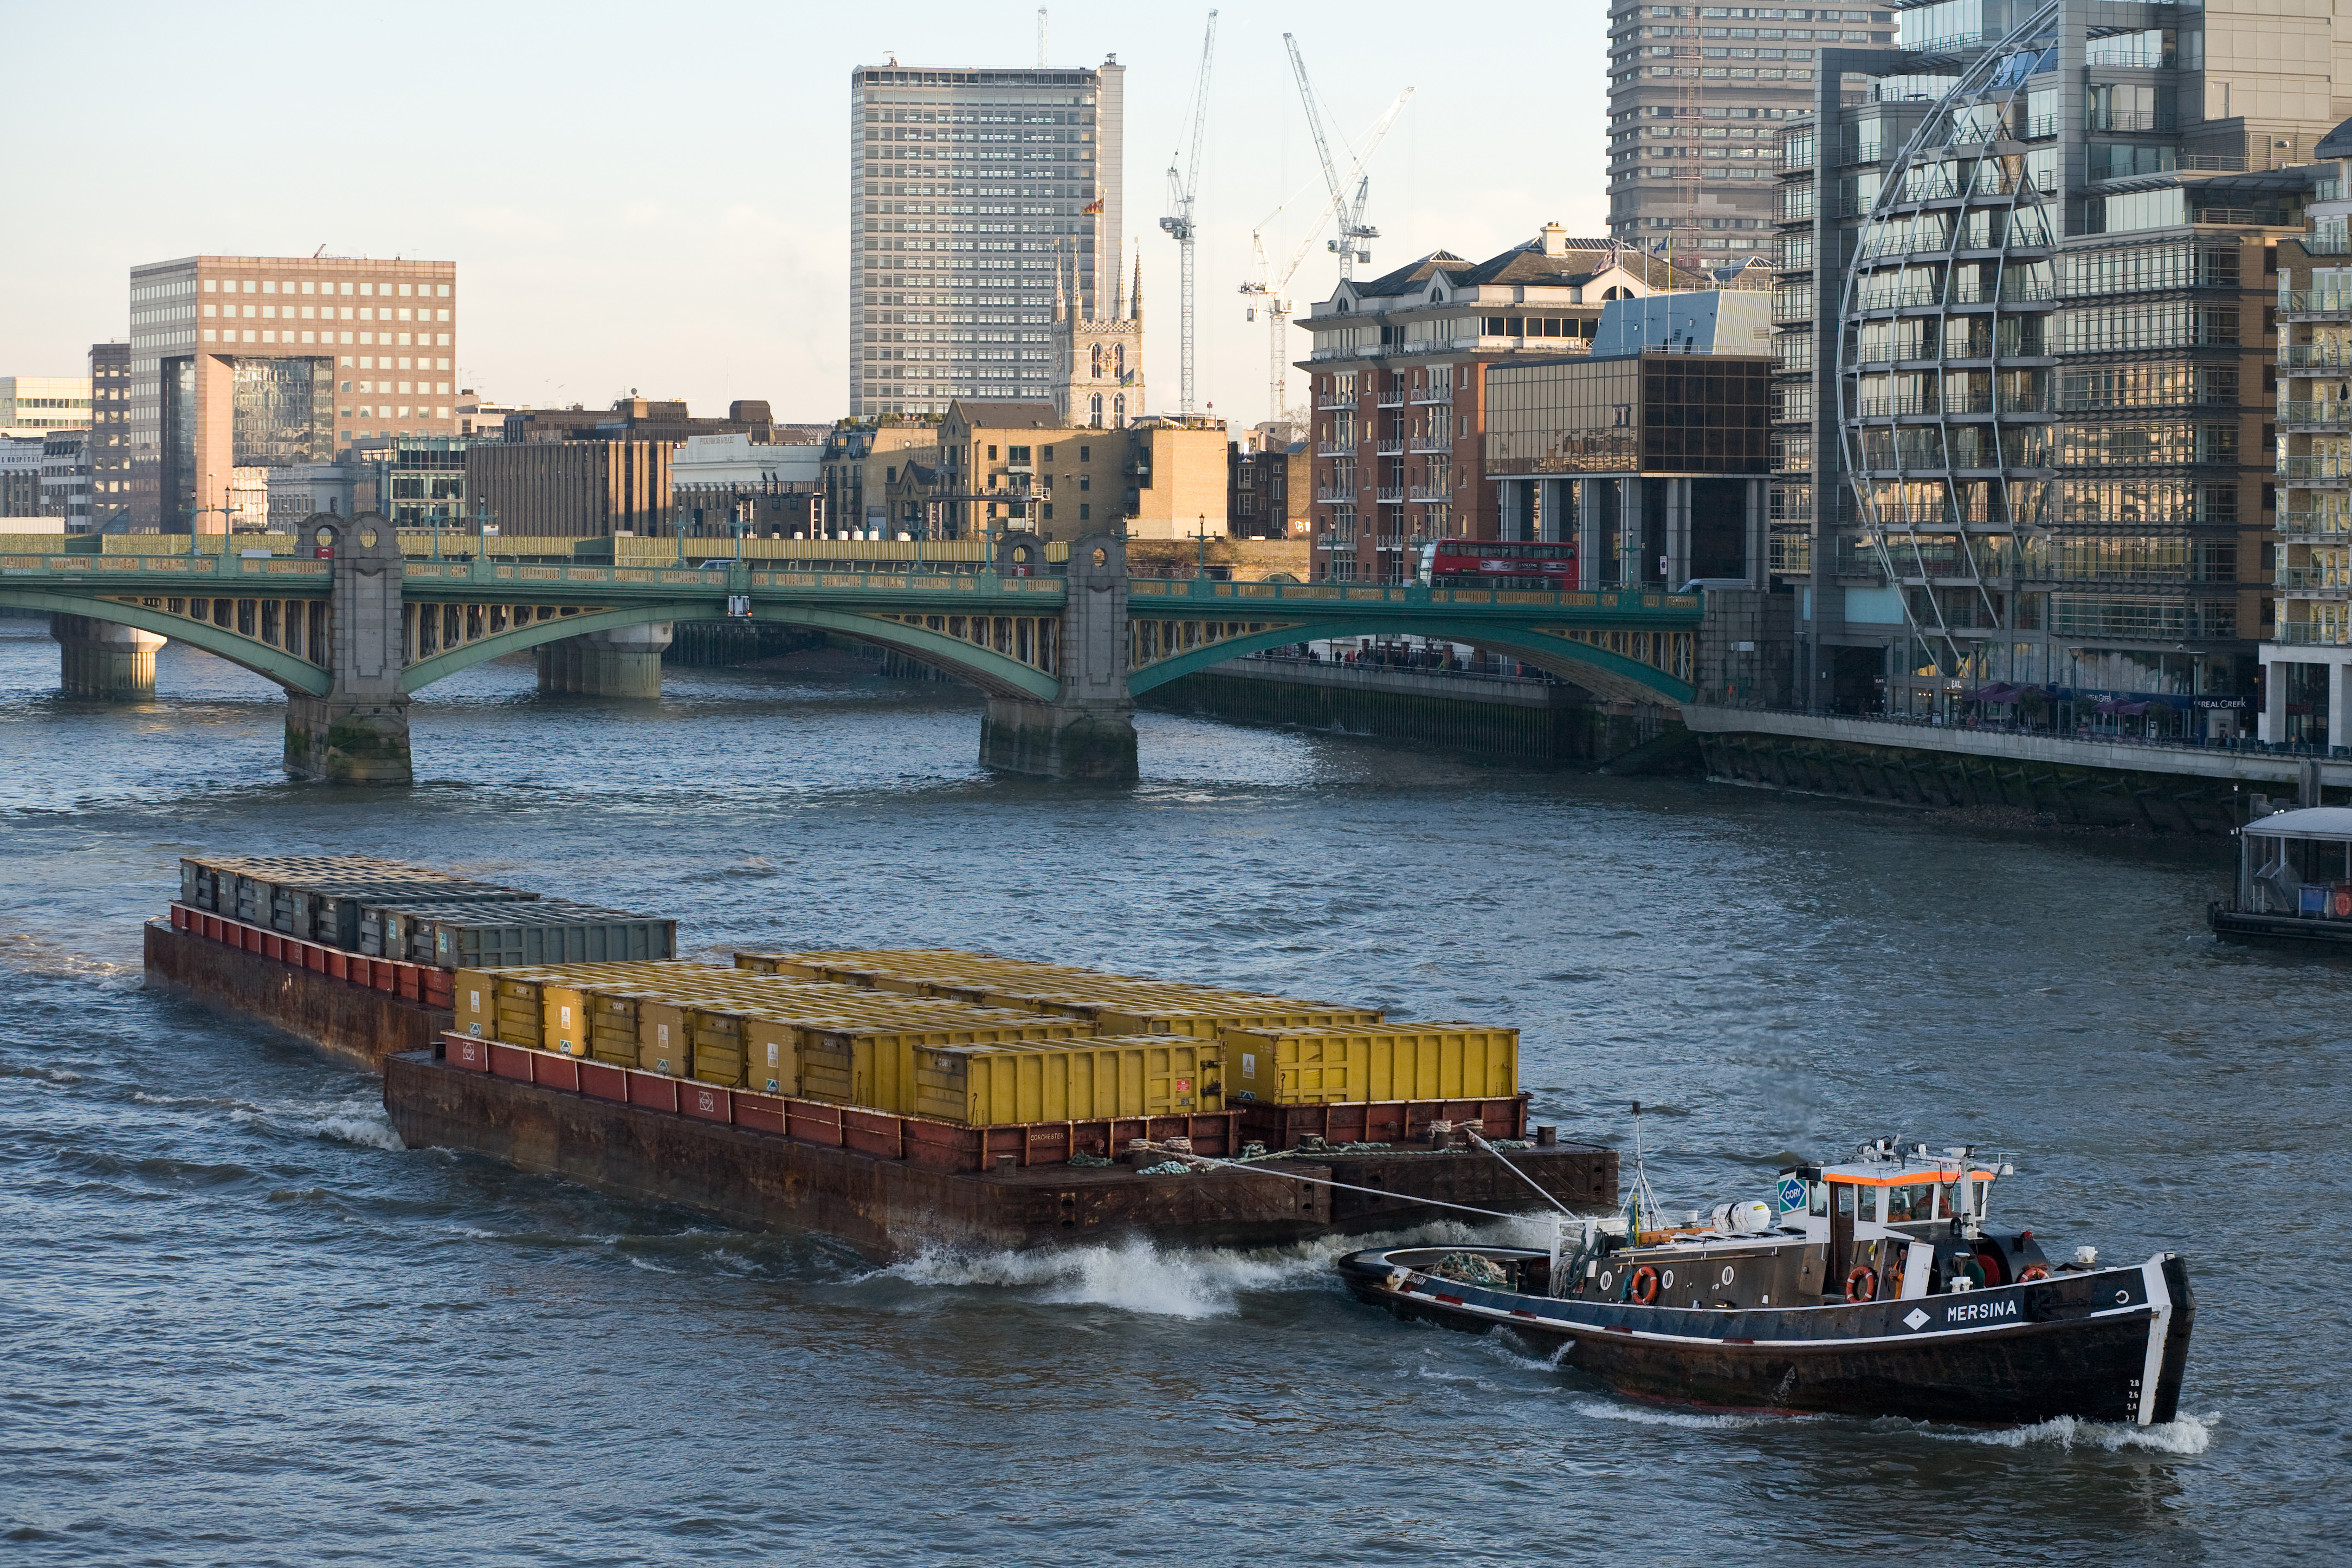 Barge on River Thames, London - Dec 2009